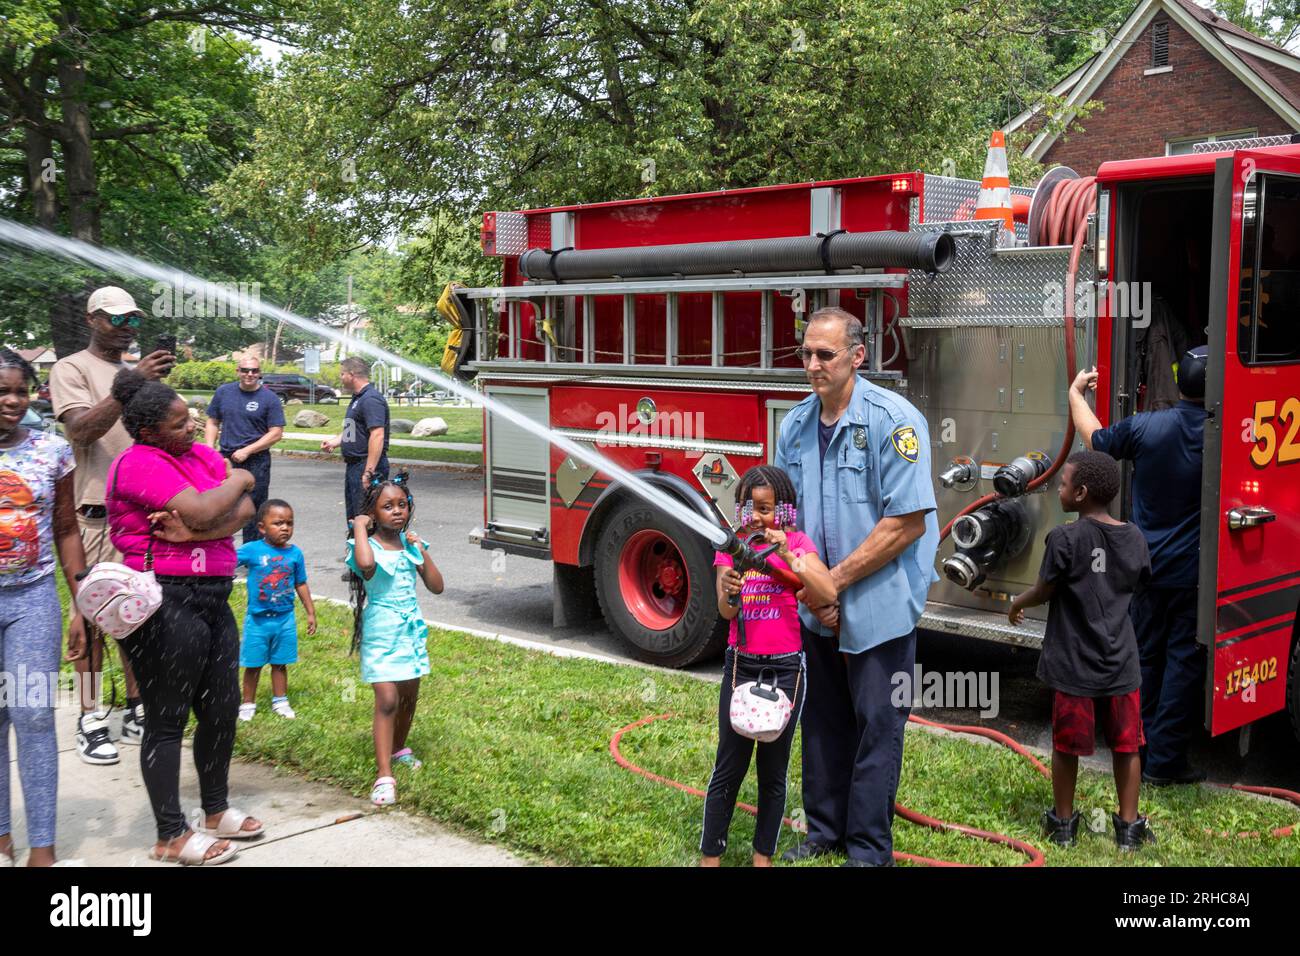 Detroit, Michigan - il dipartimento dei vigili del fuoco di Detroit consente ai bambini di maneggiare una manichetta antincendio mentre i residenti del quartiere di Morningside organizzano un picnic/festa Foto Stock